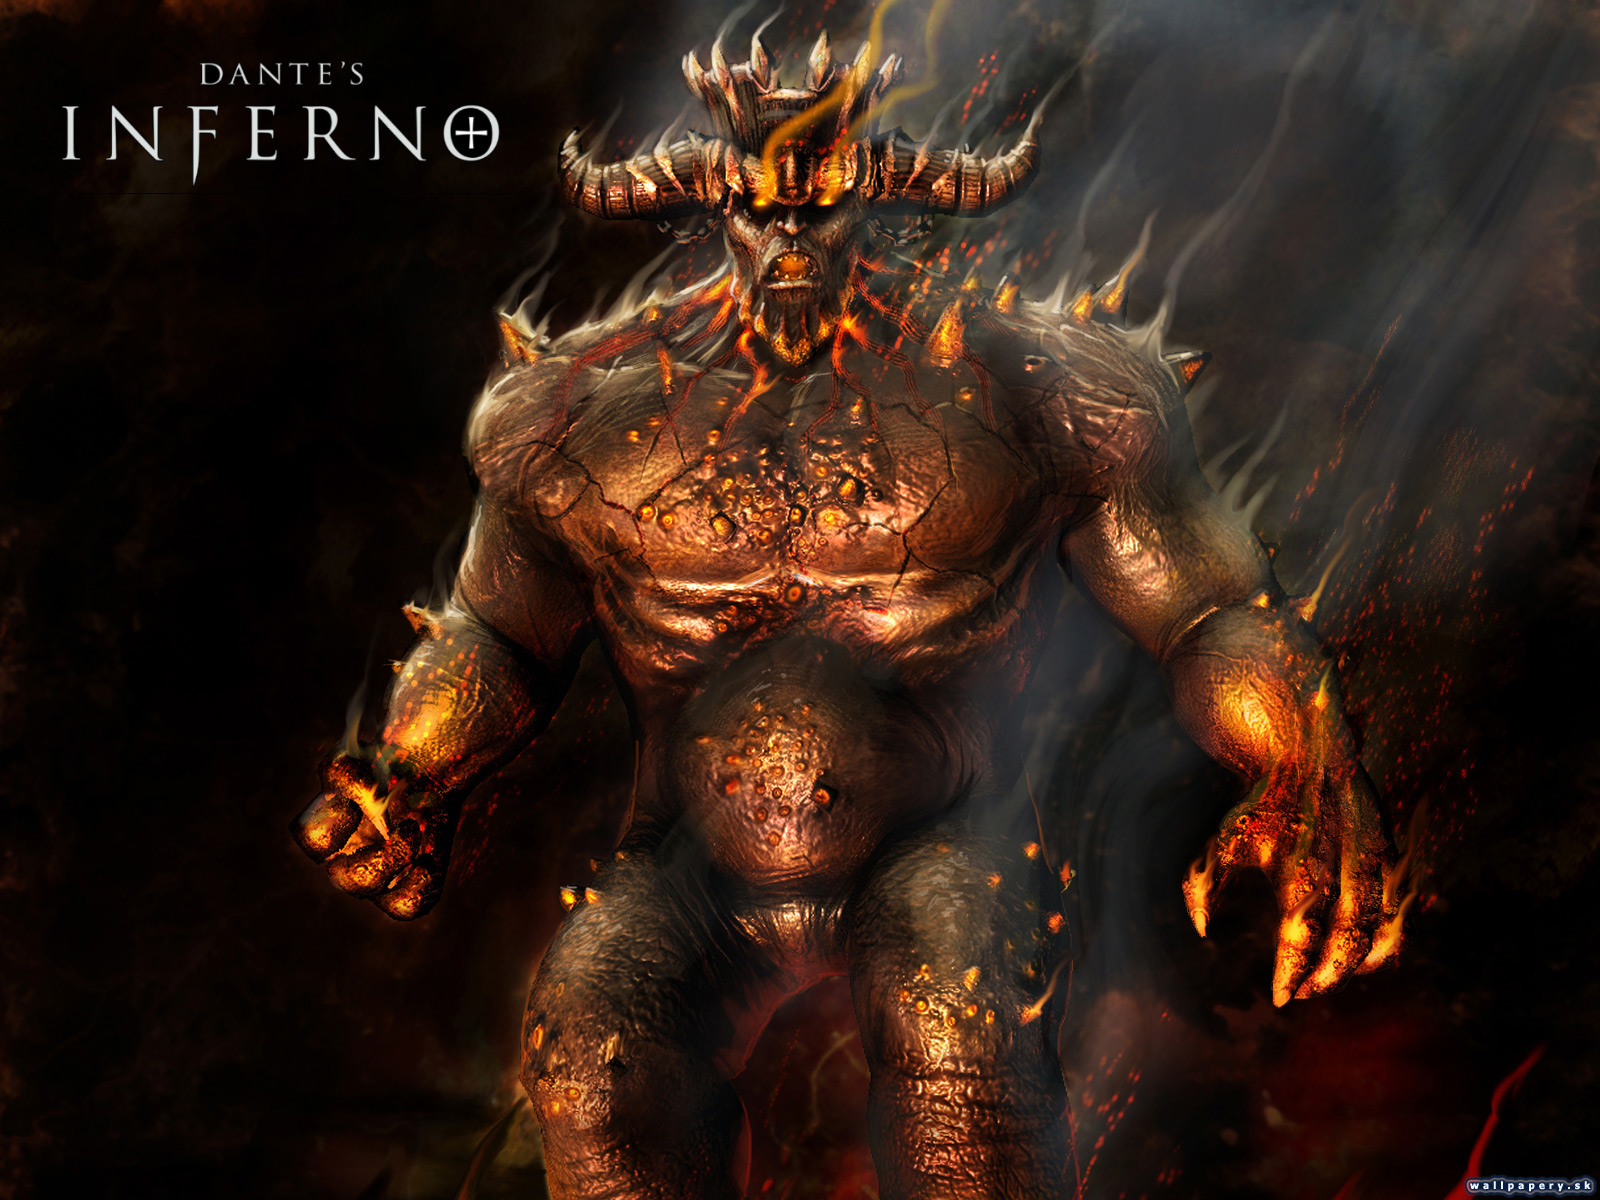 Dante's Inferno - wallpaper 3 | ABCgames.sk